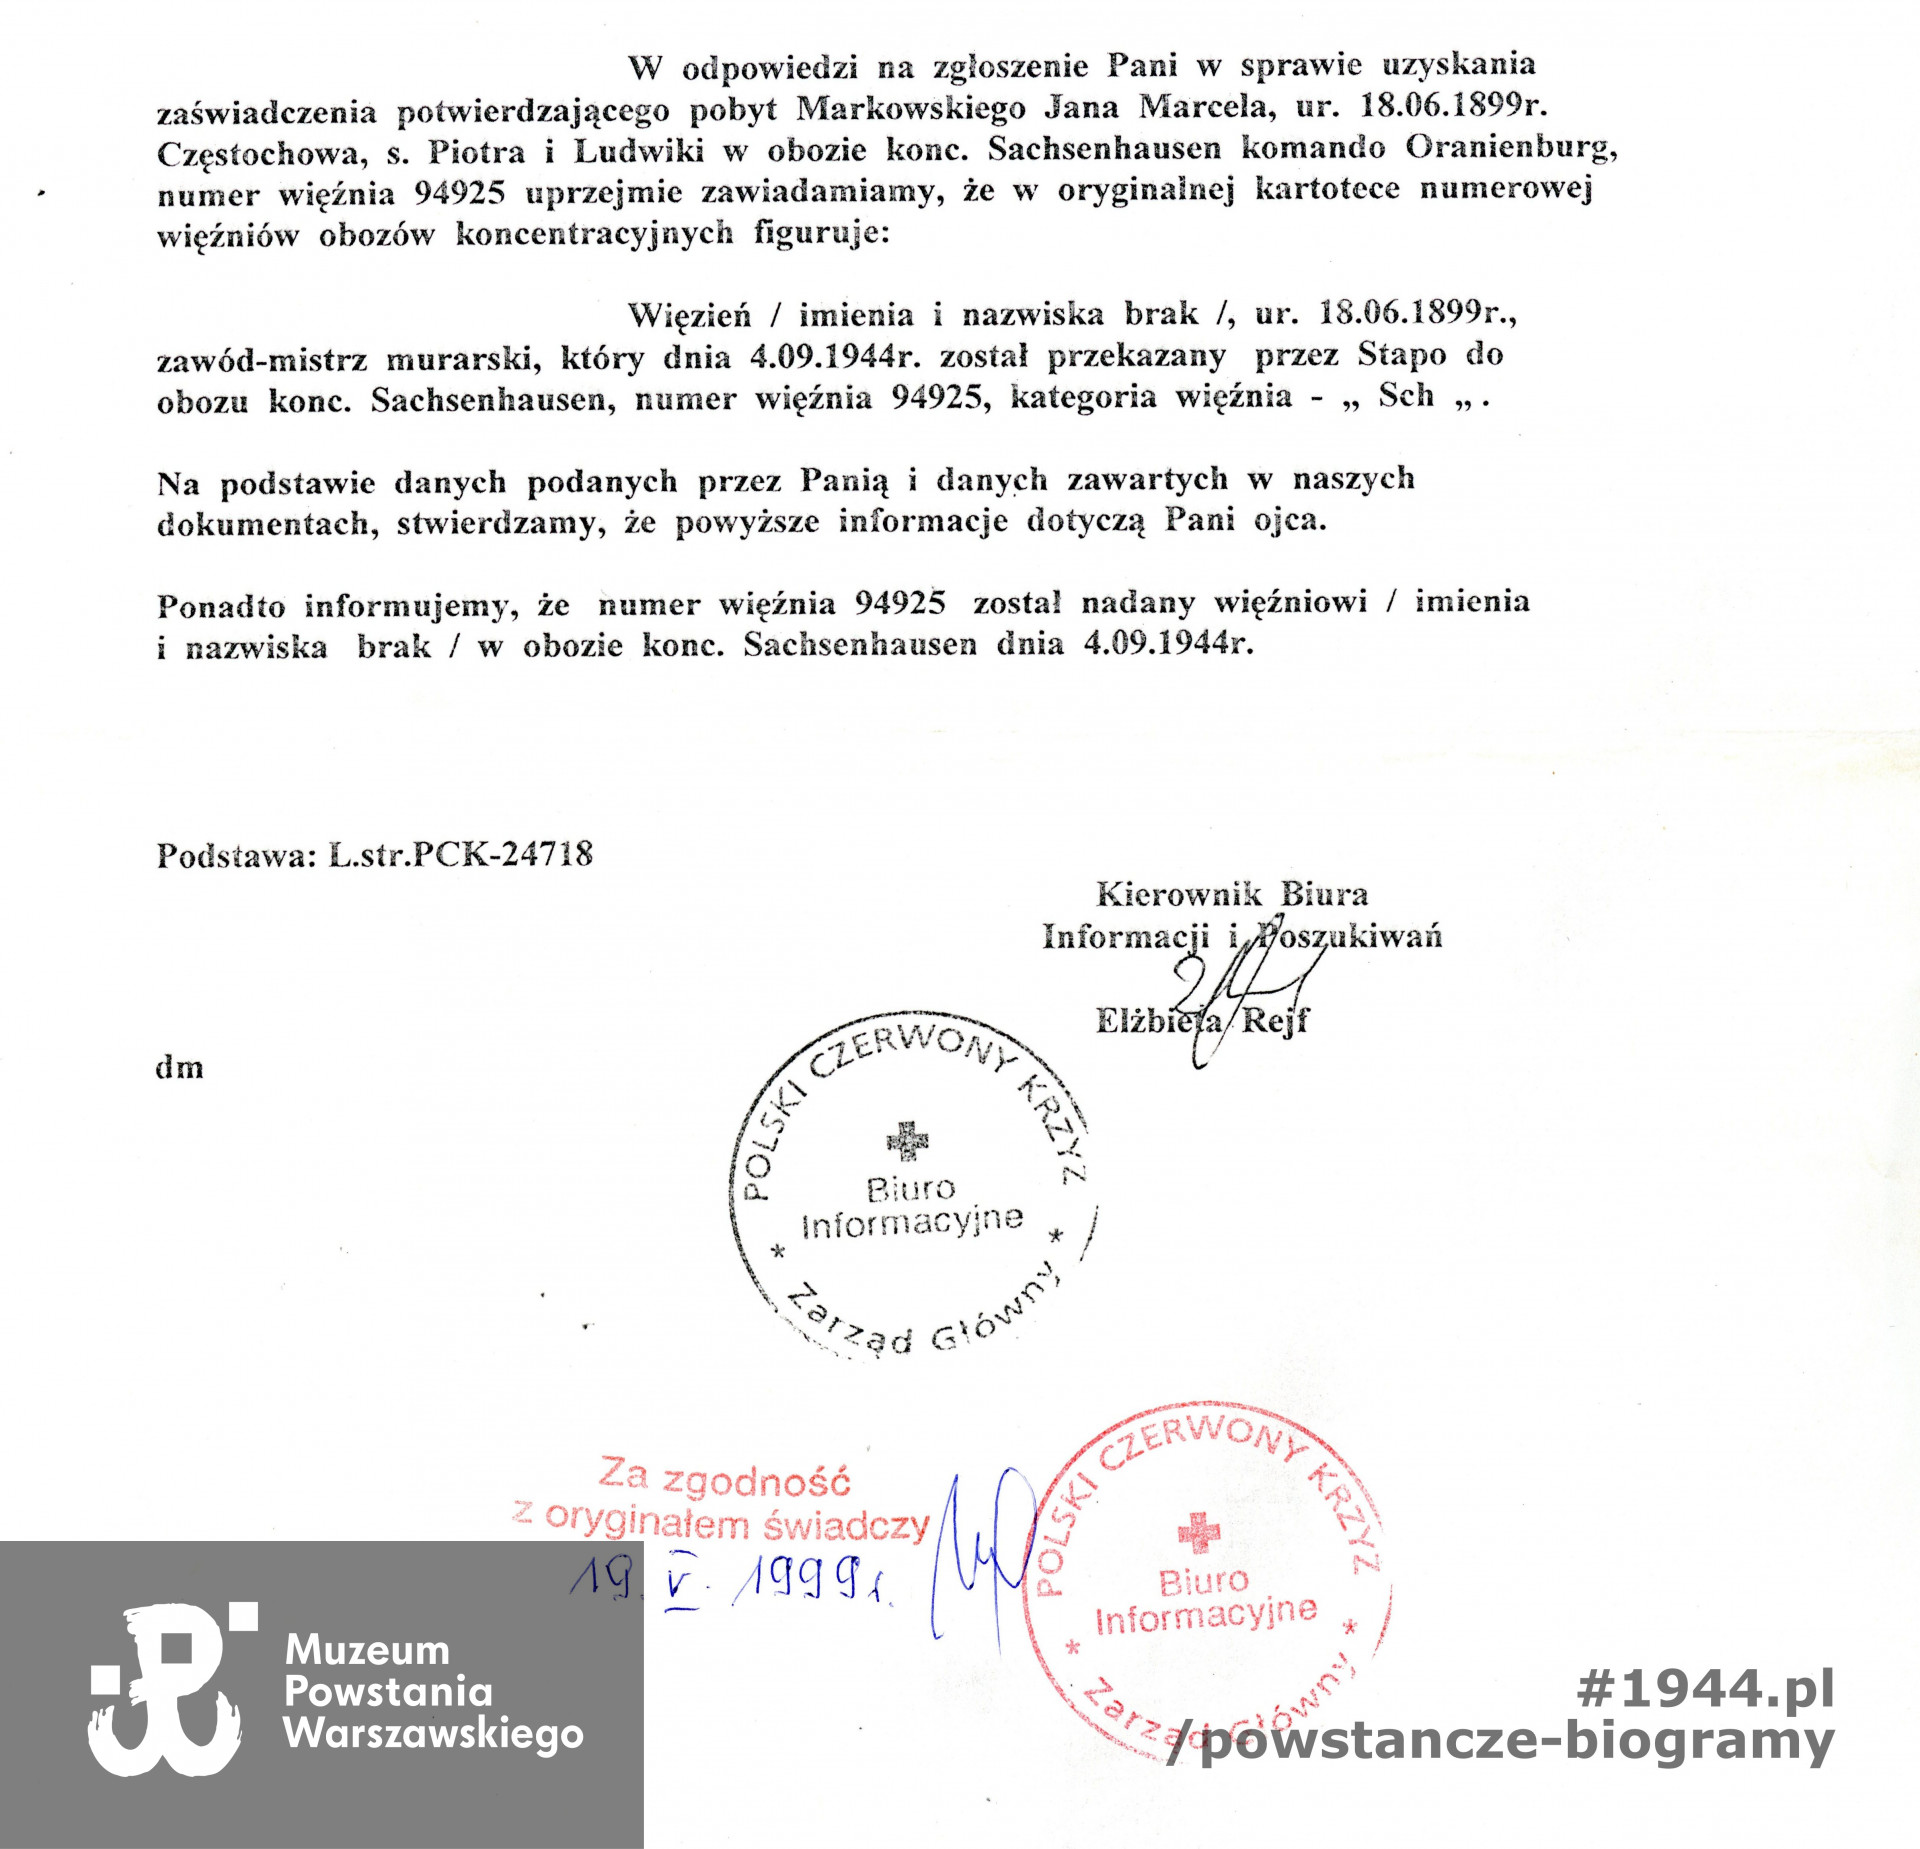 Polski Czerwony Krzyż - pismo w oparciu o L. strat PCK-24718